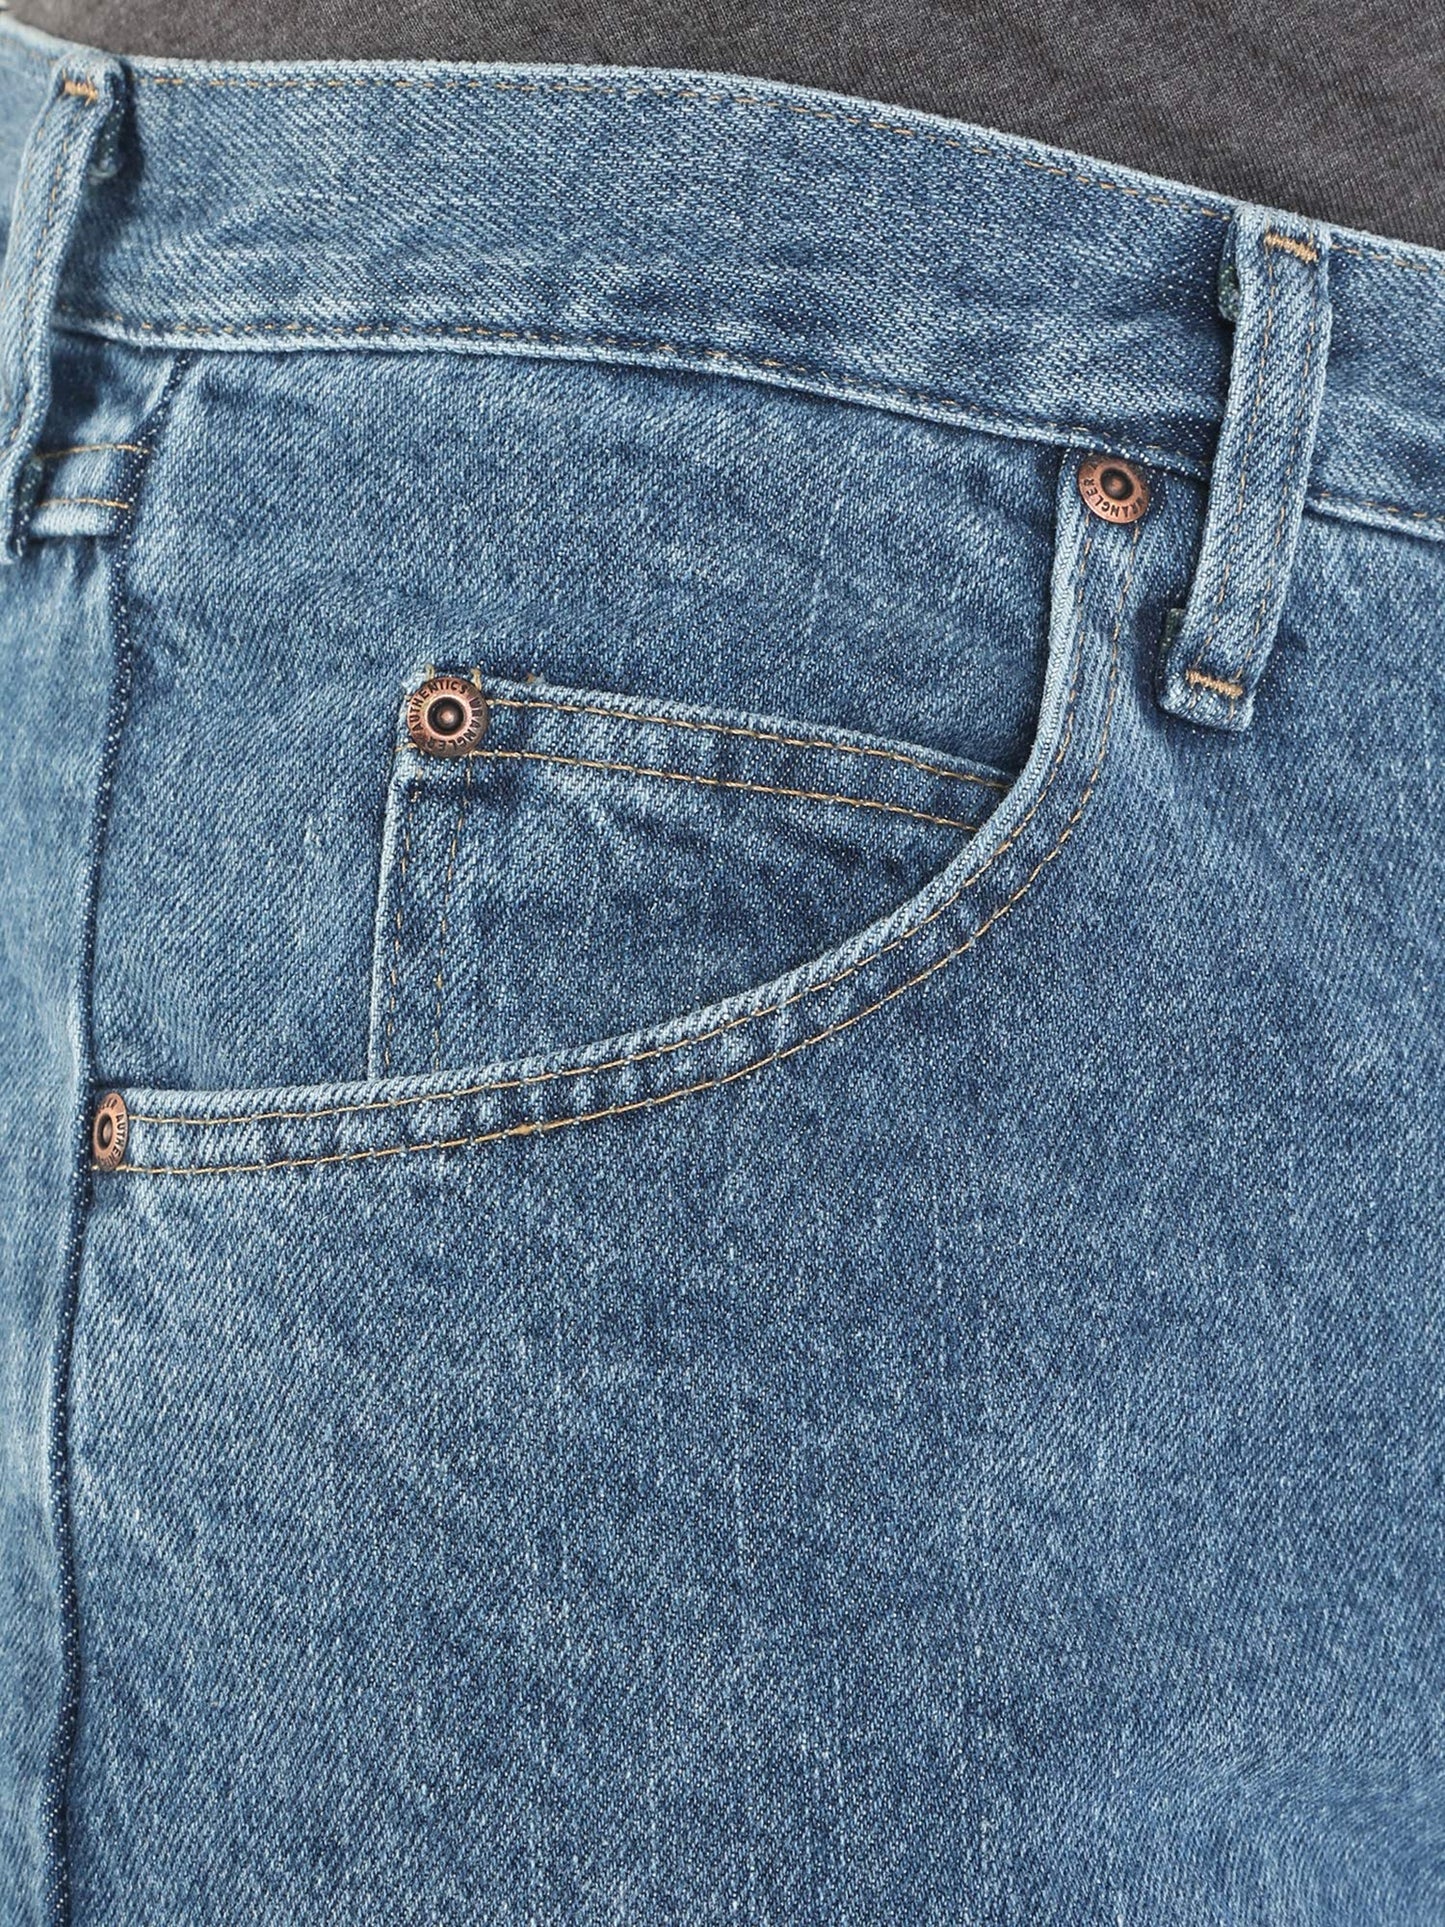 Wrangler Authentics Men's Classic 5-Pocket Relaxed Fit Cotton Jean, Vintage Stonewash, 42W x 32L